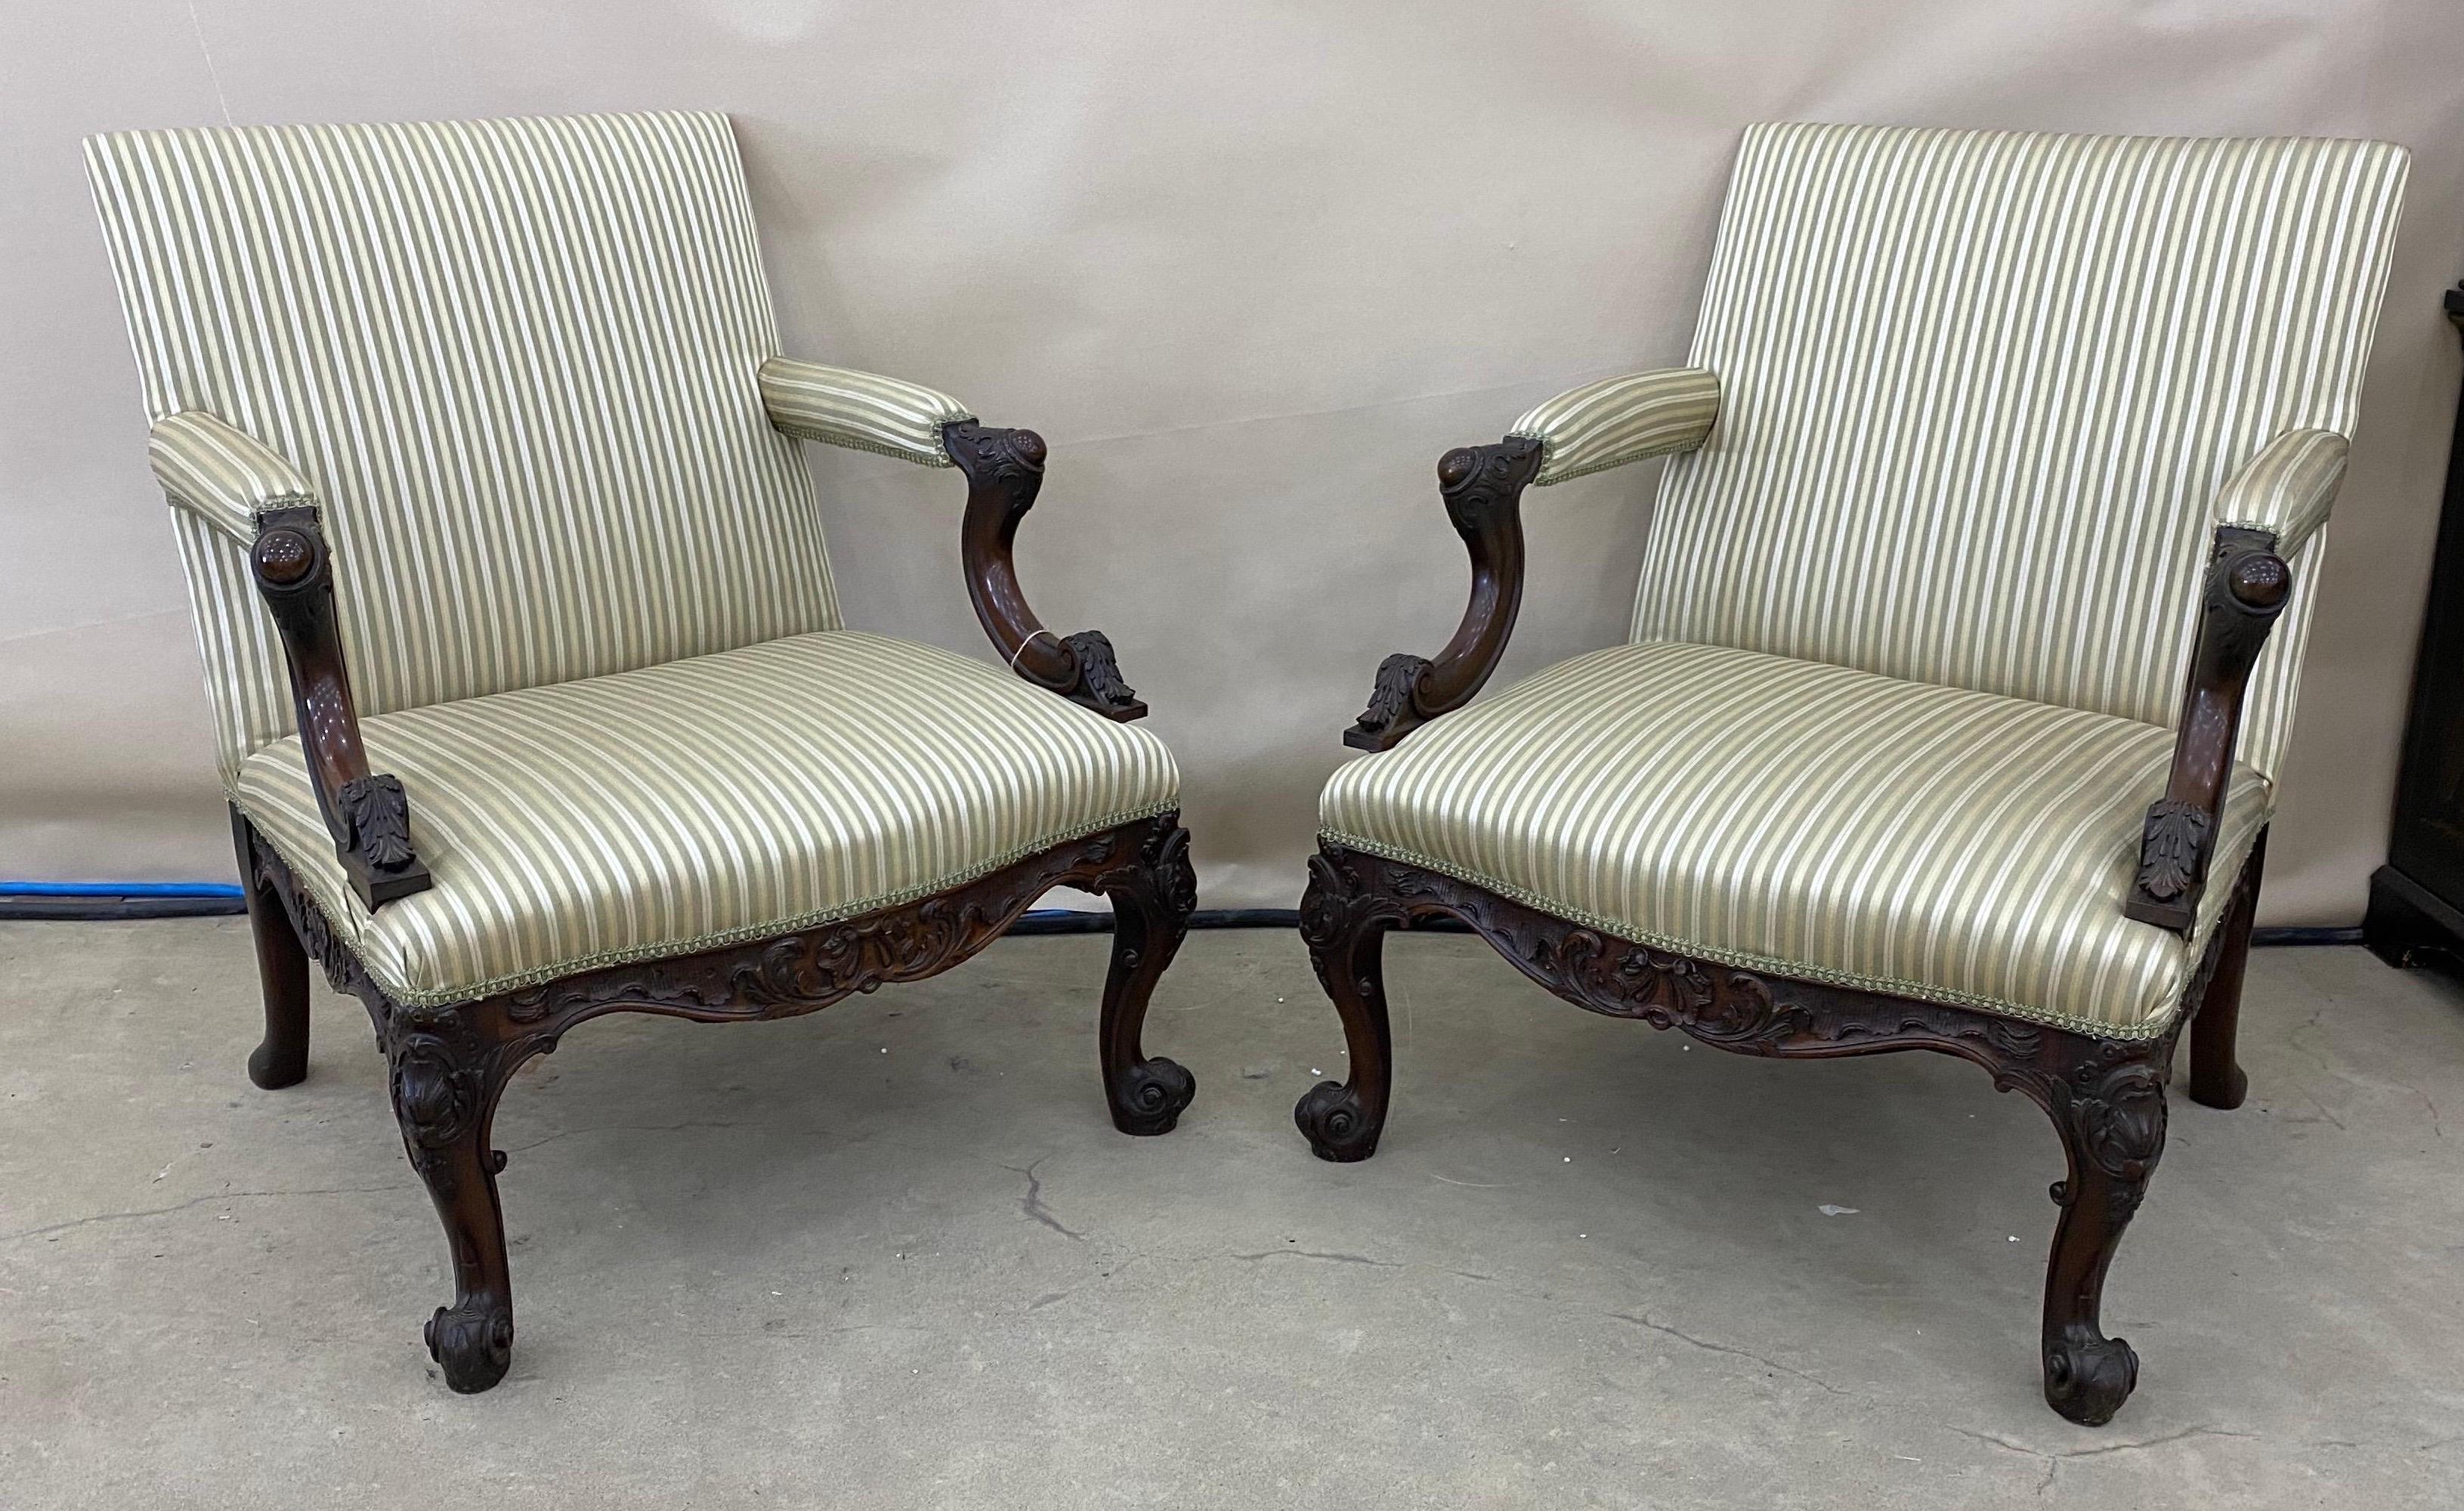 Feines Paar Gainsborough-Stühle aus georgischem Mahagoni des frühen 19. Jahrhunderts. Kürzlich neu gepolstert.